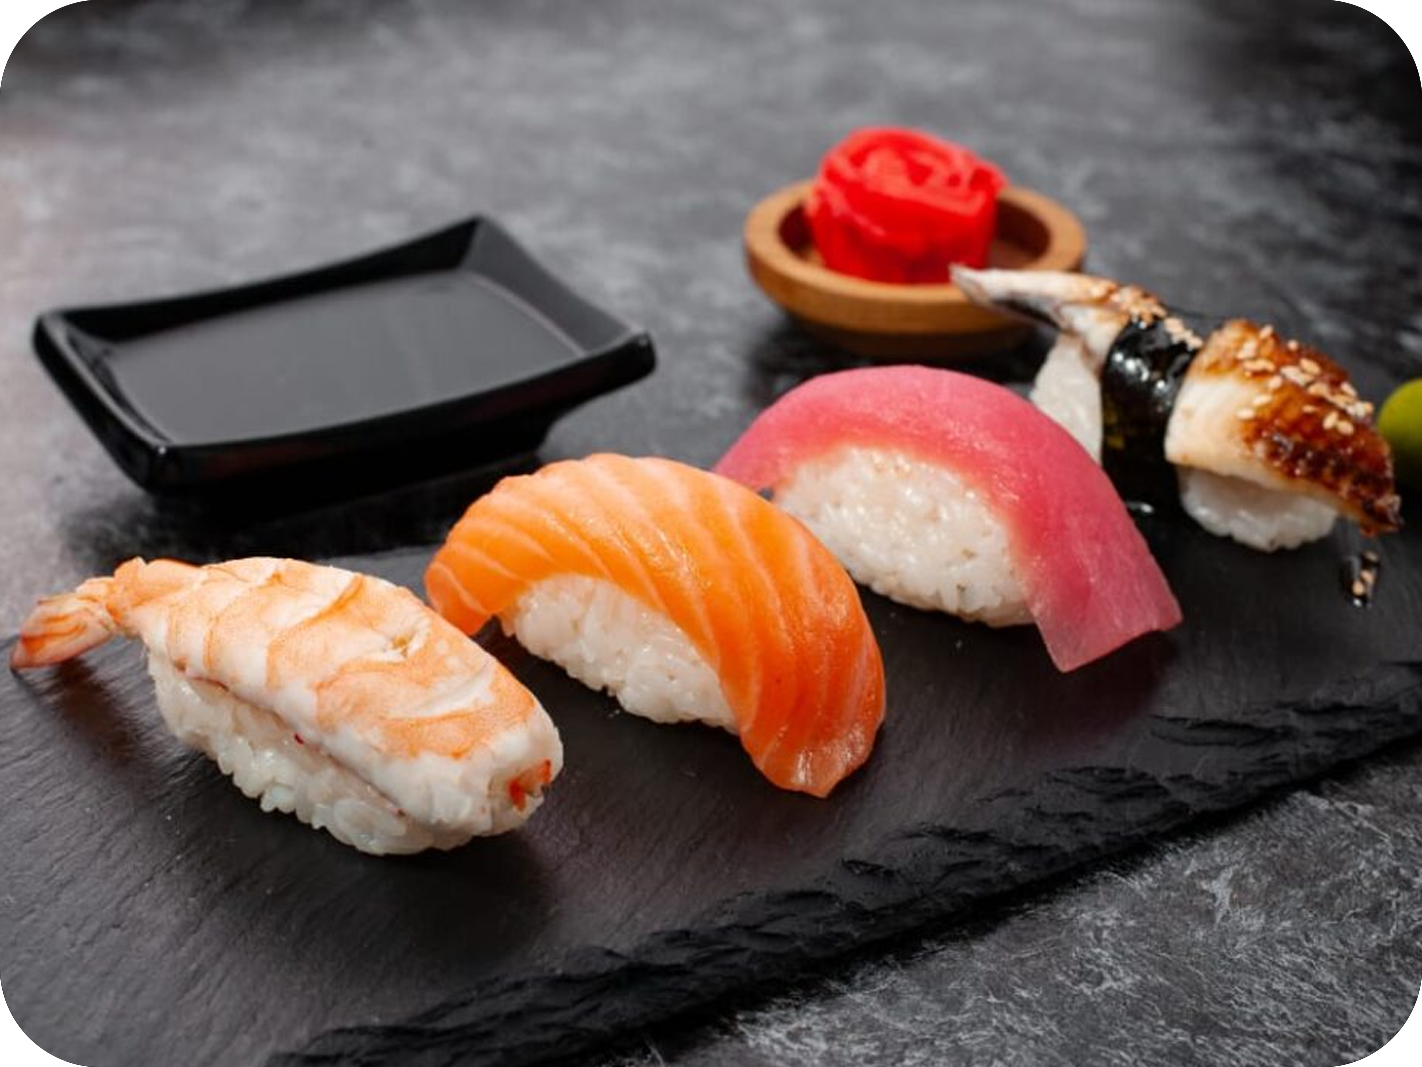 Суши рыбацкое. Суши лосось креветка угорь. Японские роллы. Суши японские традиционные. Суши с лососем.